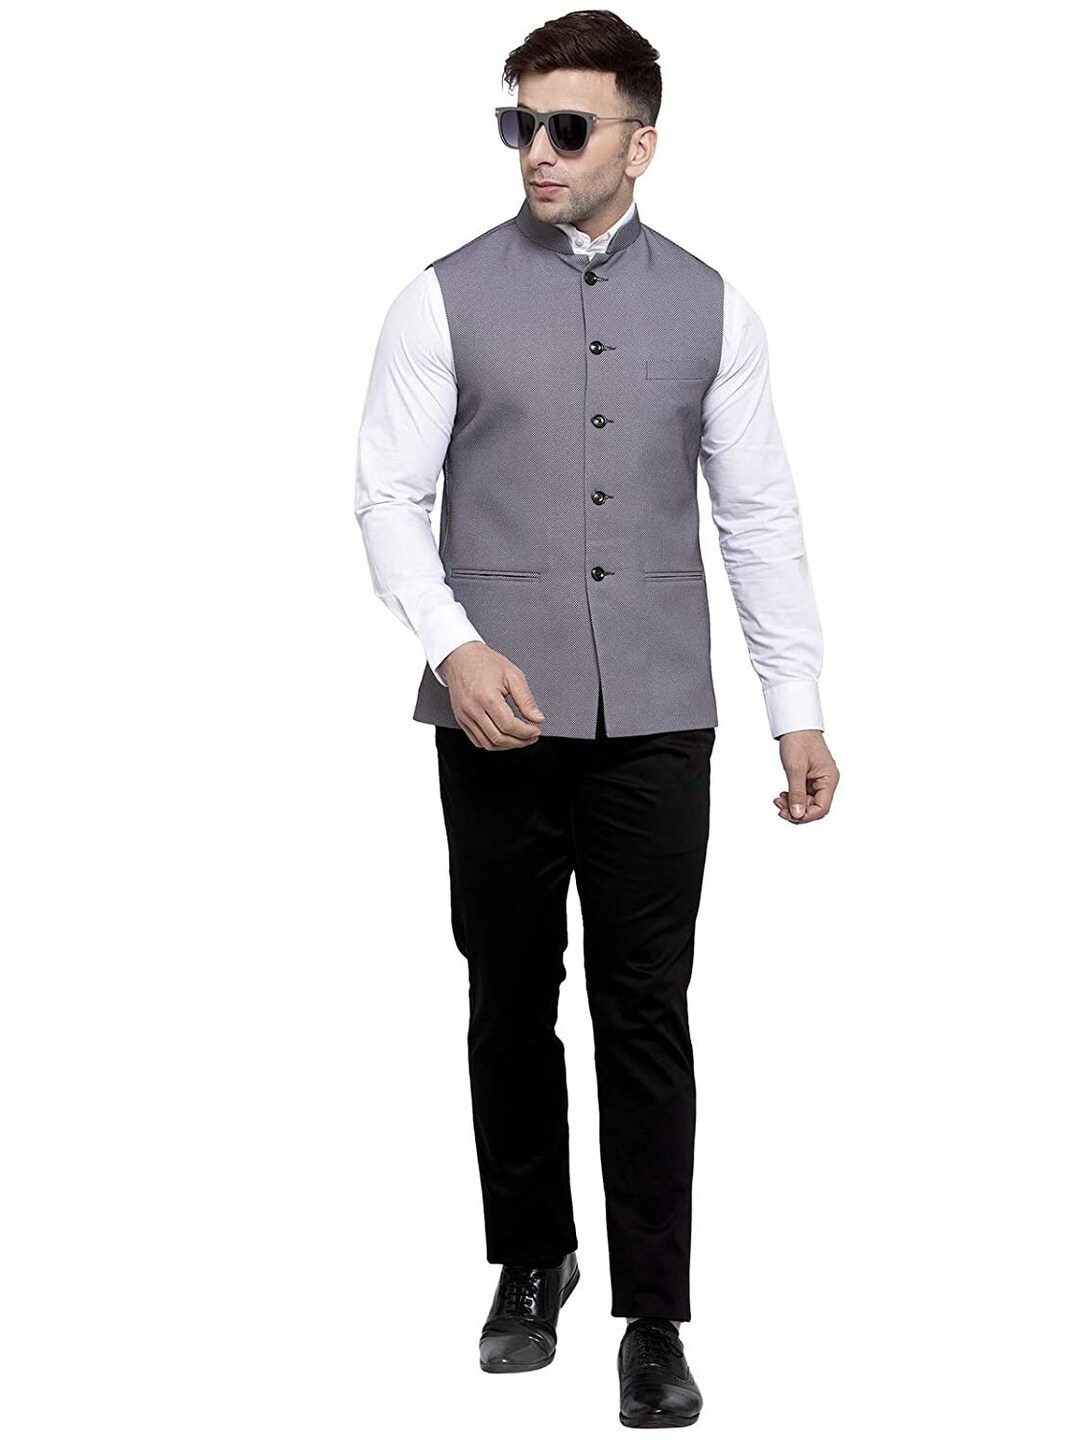 Sherwani for Men Stylish Formal Set of Waist Coat Shirt and - Etsy